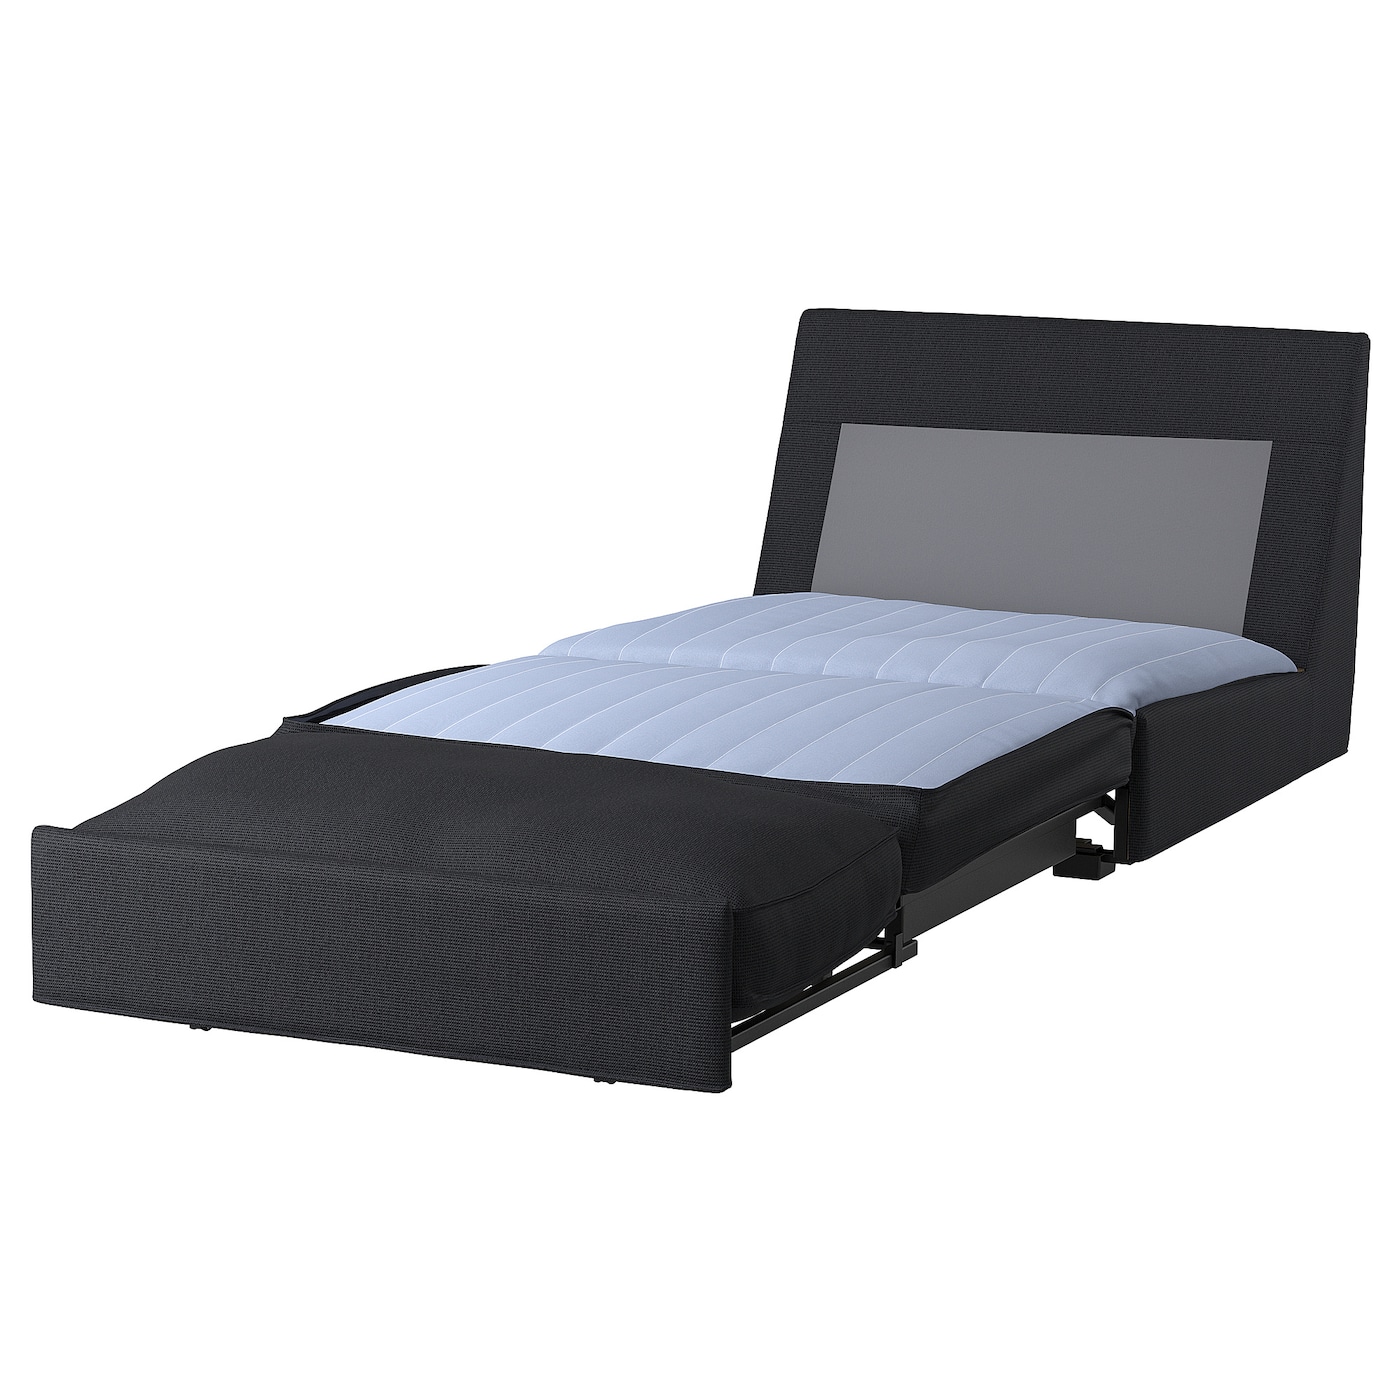 КИВИК 1 диван-кровать с откидной спинкой, Тресунд антрацит KIVIK IKEA диван кровать роуз тд 410